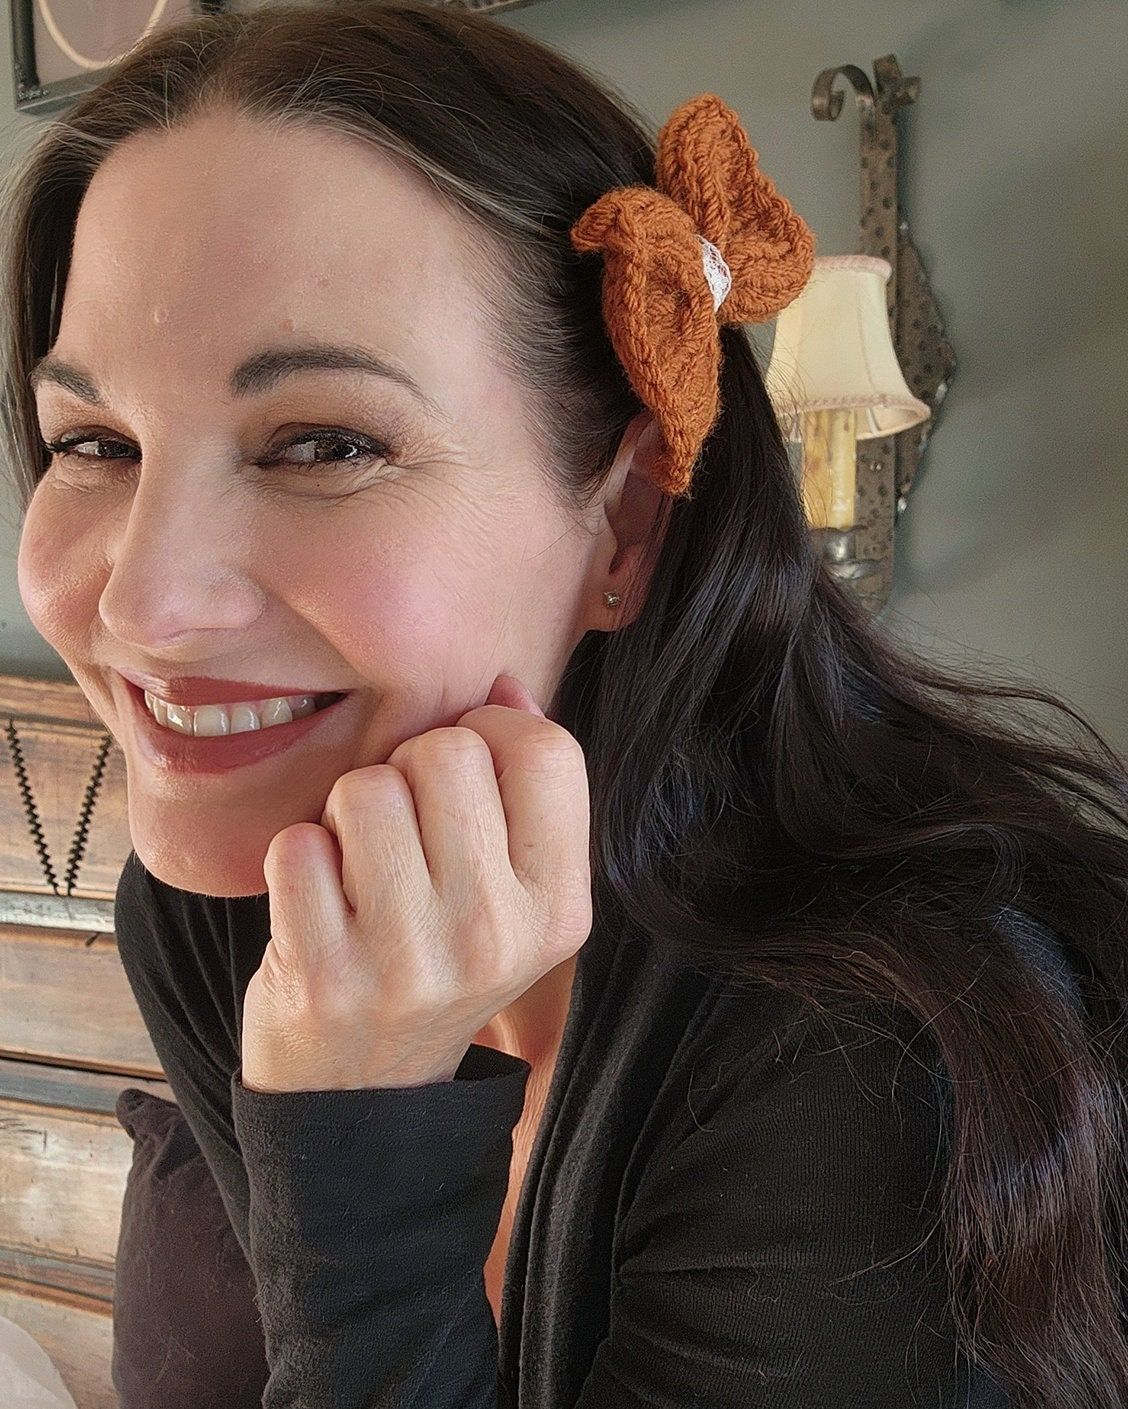 The Autumn Spice Hand Knit Mini Hair Bow on Clip